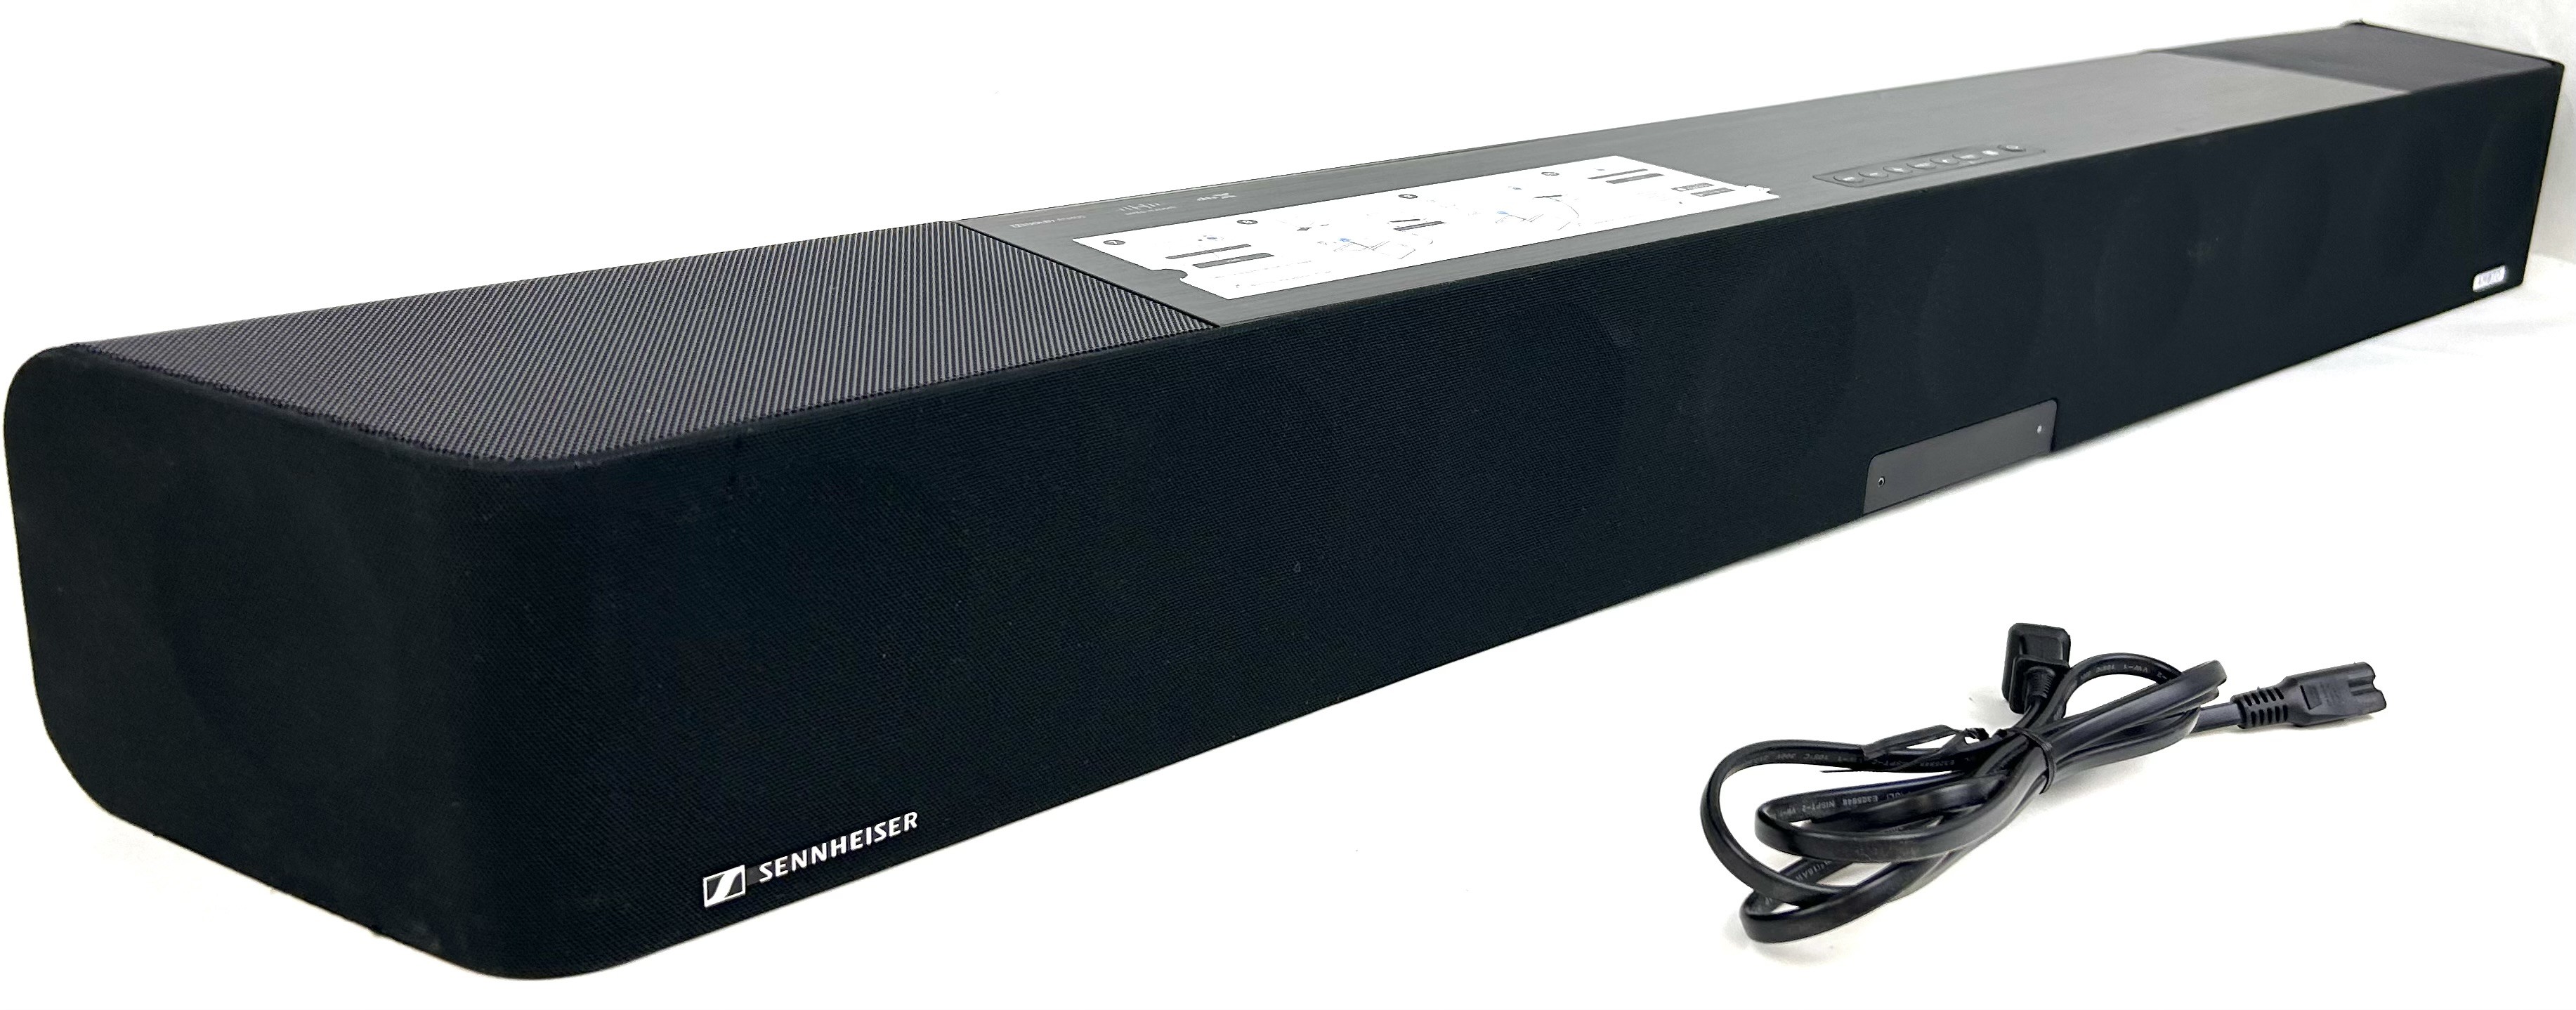 Sennheiser AMBEO MAX 5.1.4 Channel with Dolby Atmos Soundbar SB01 - 0209000284